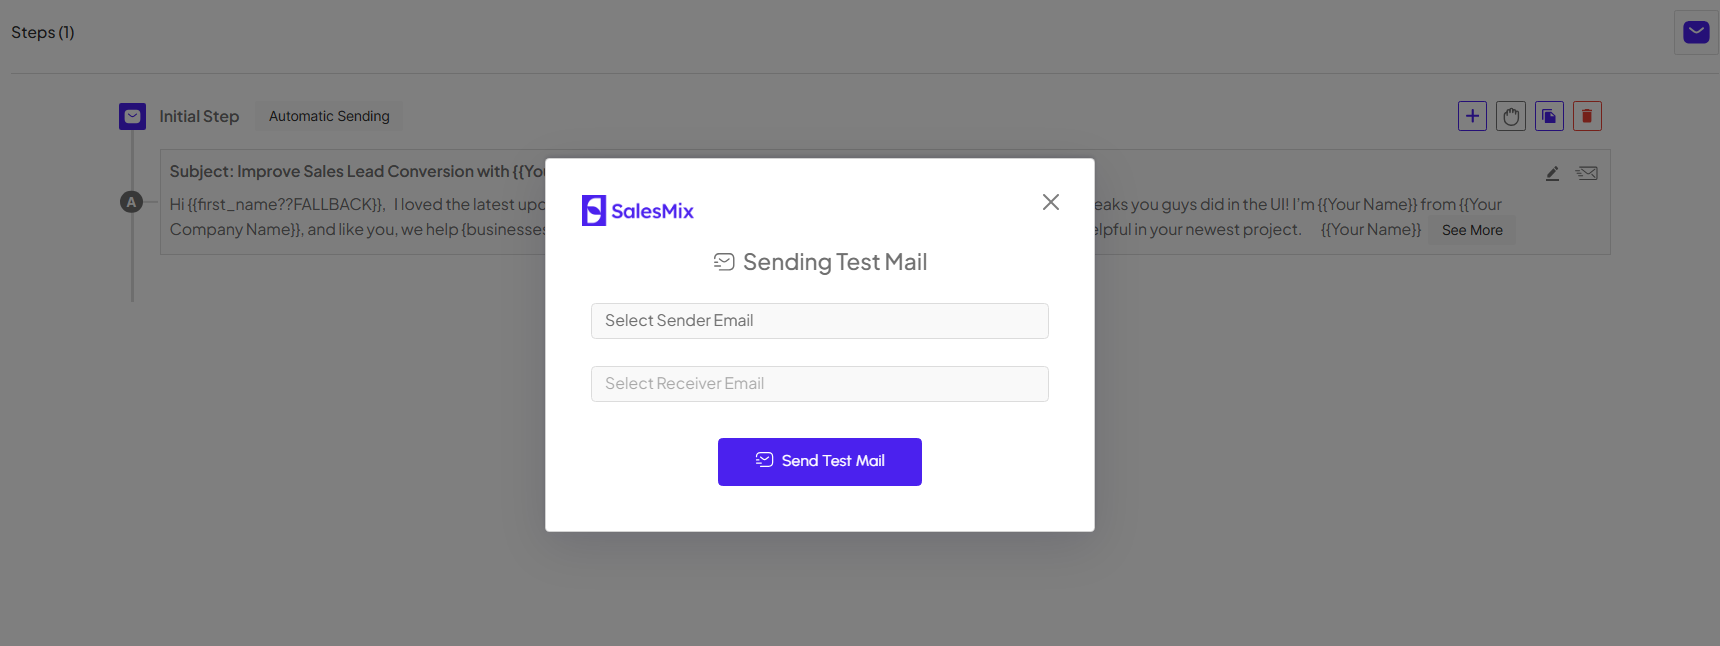 Test Mail in SalesMix